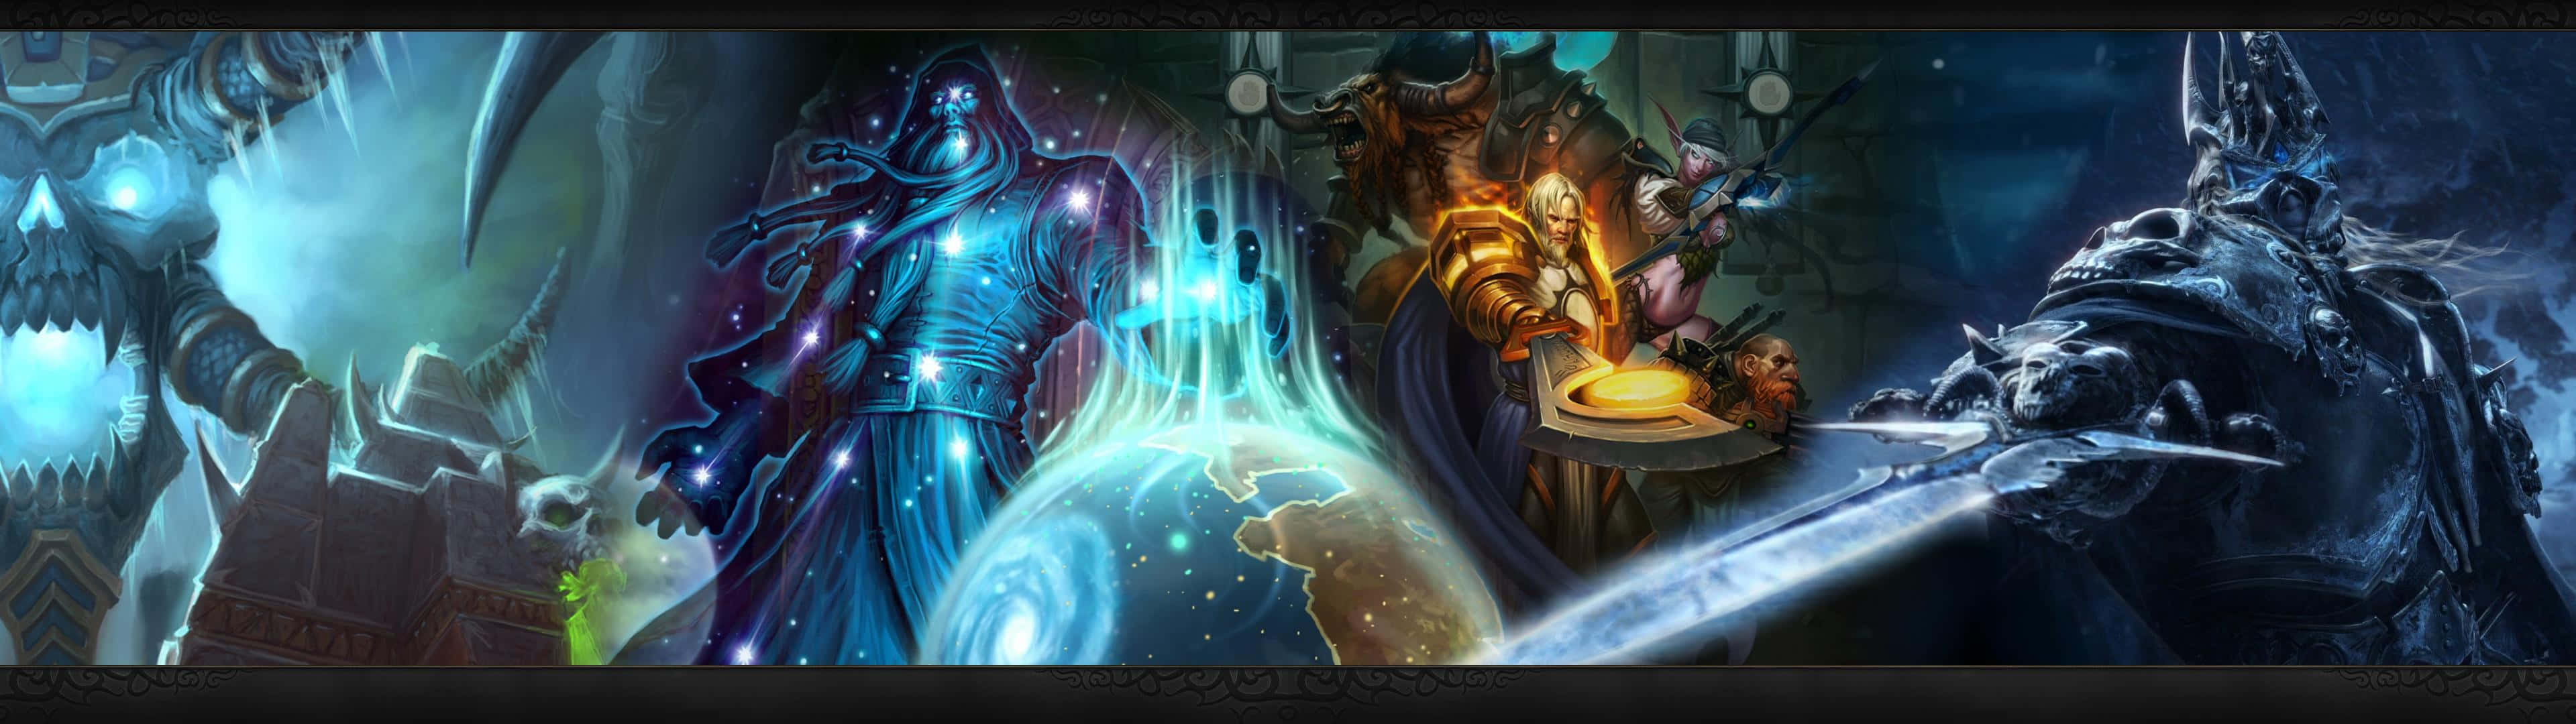 Världenav Warcrafts Största Karaktärer Bästa Bildskärmsbakgrund.